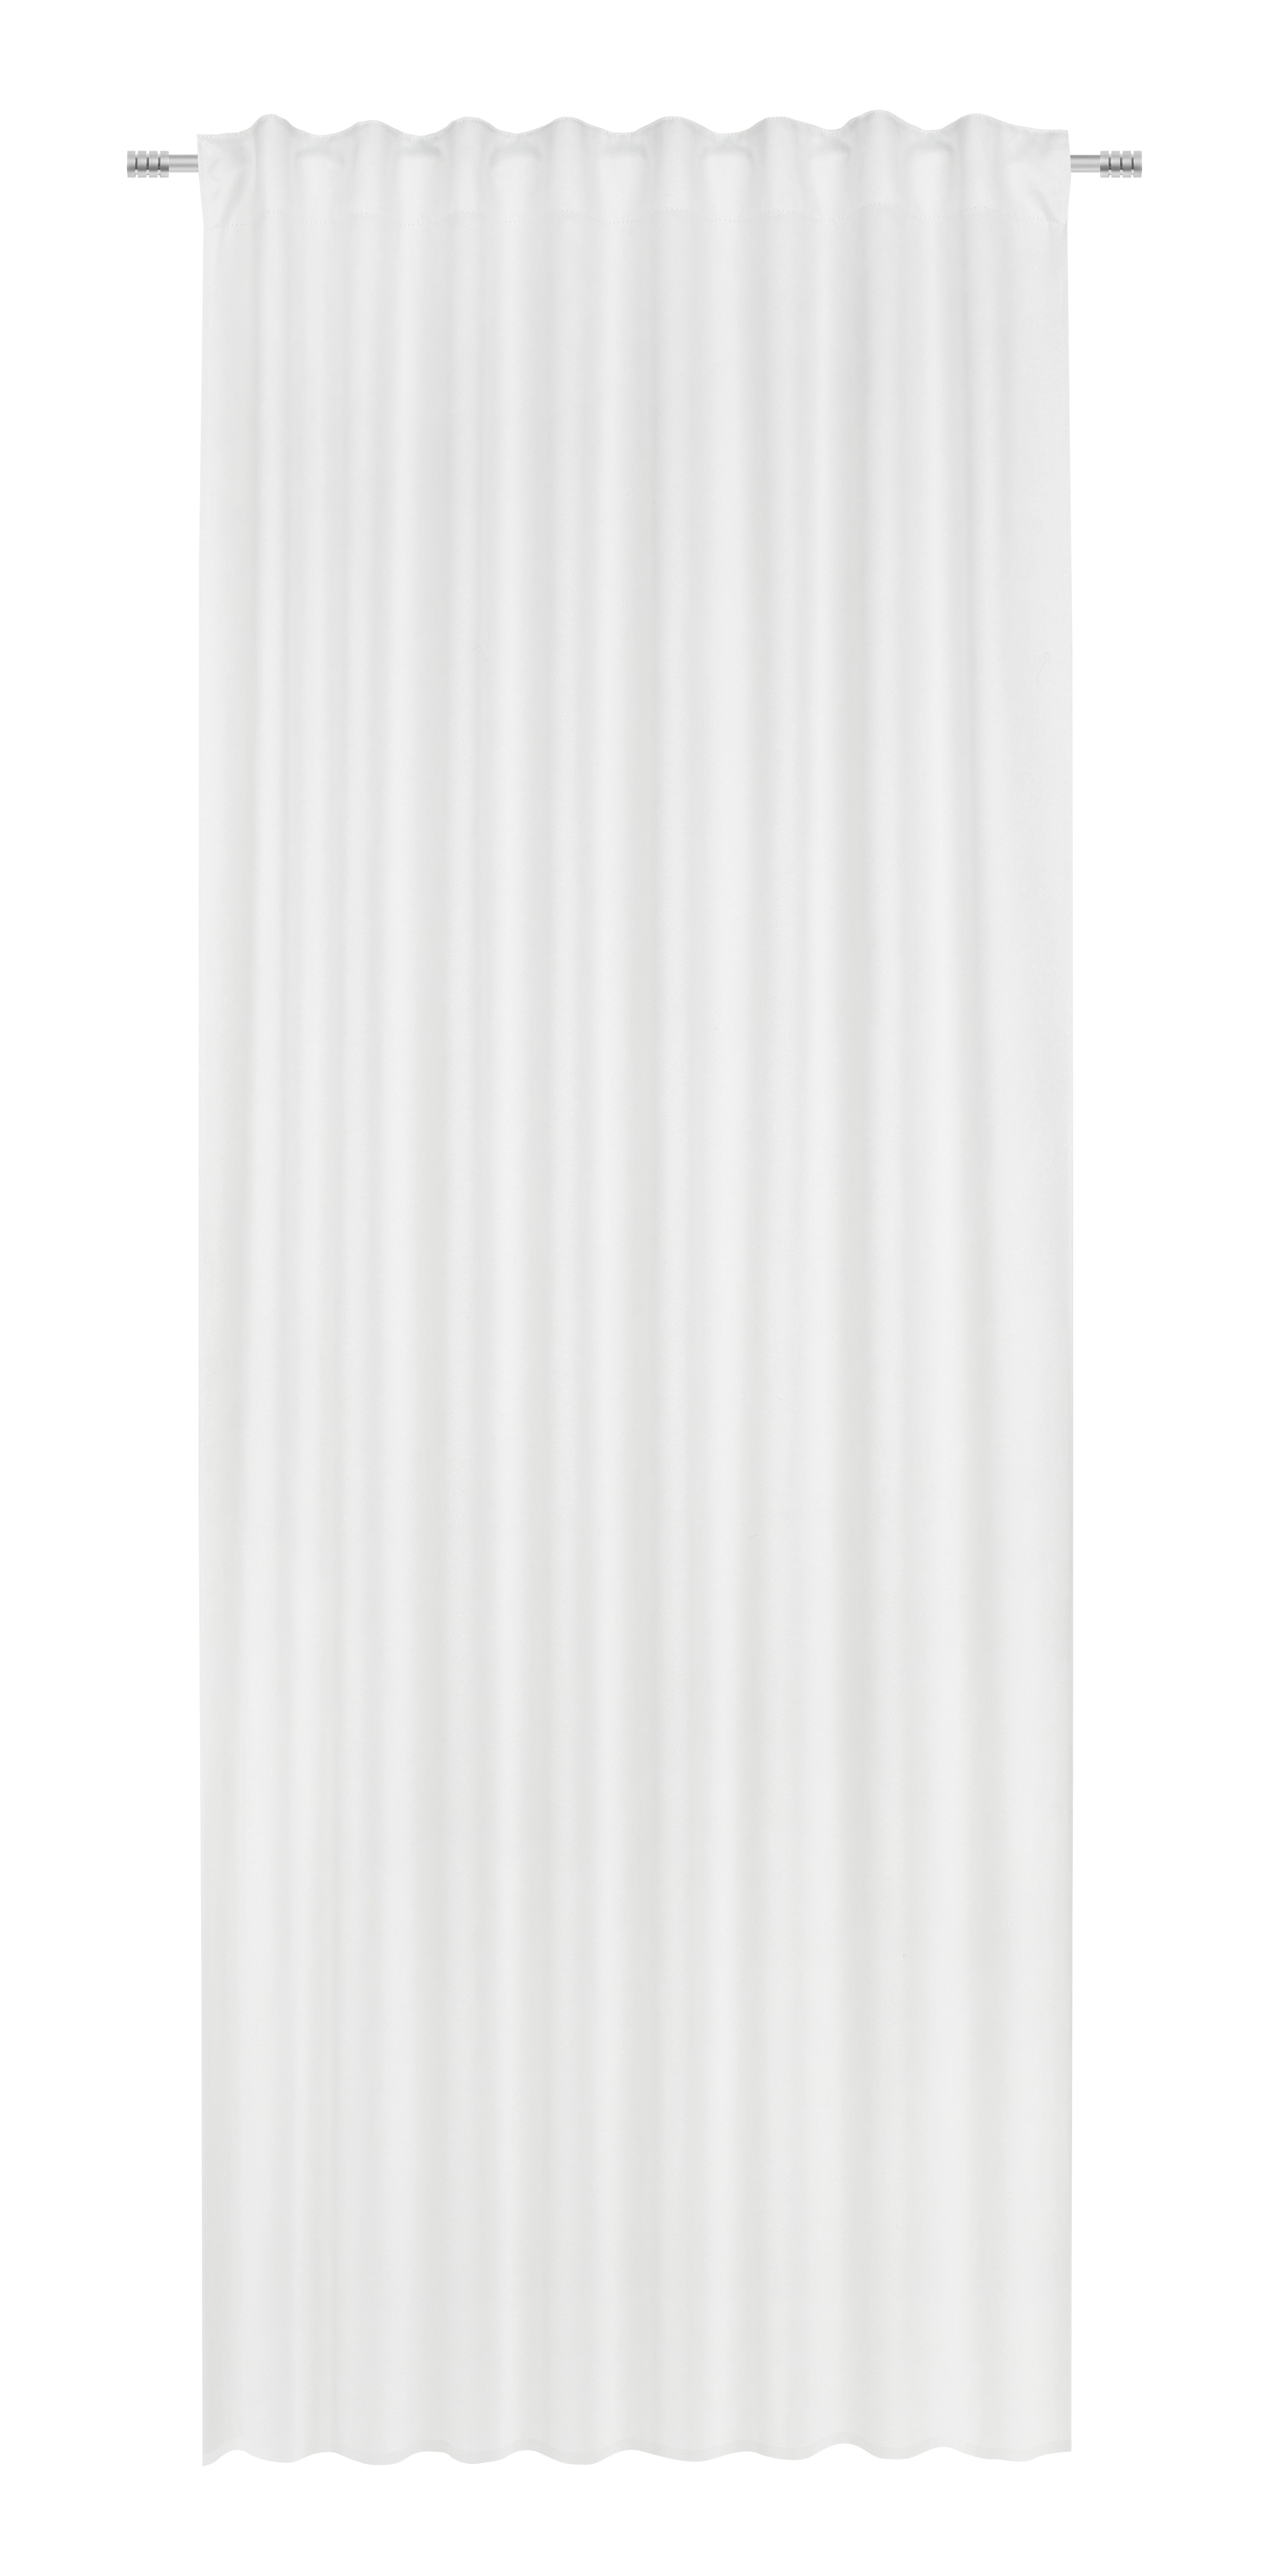 FERTIGVORHANG Siena blickdicht 135/255 cm   - Creme, Basics, Textil (135/255cm) - Dieter Knoll